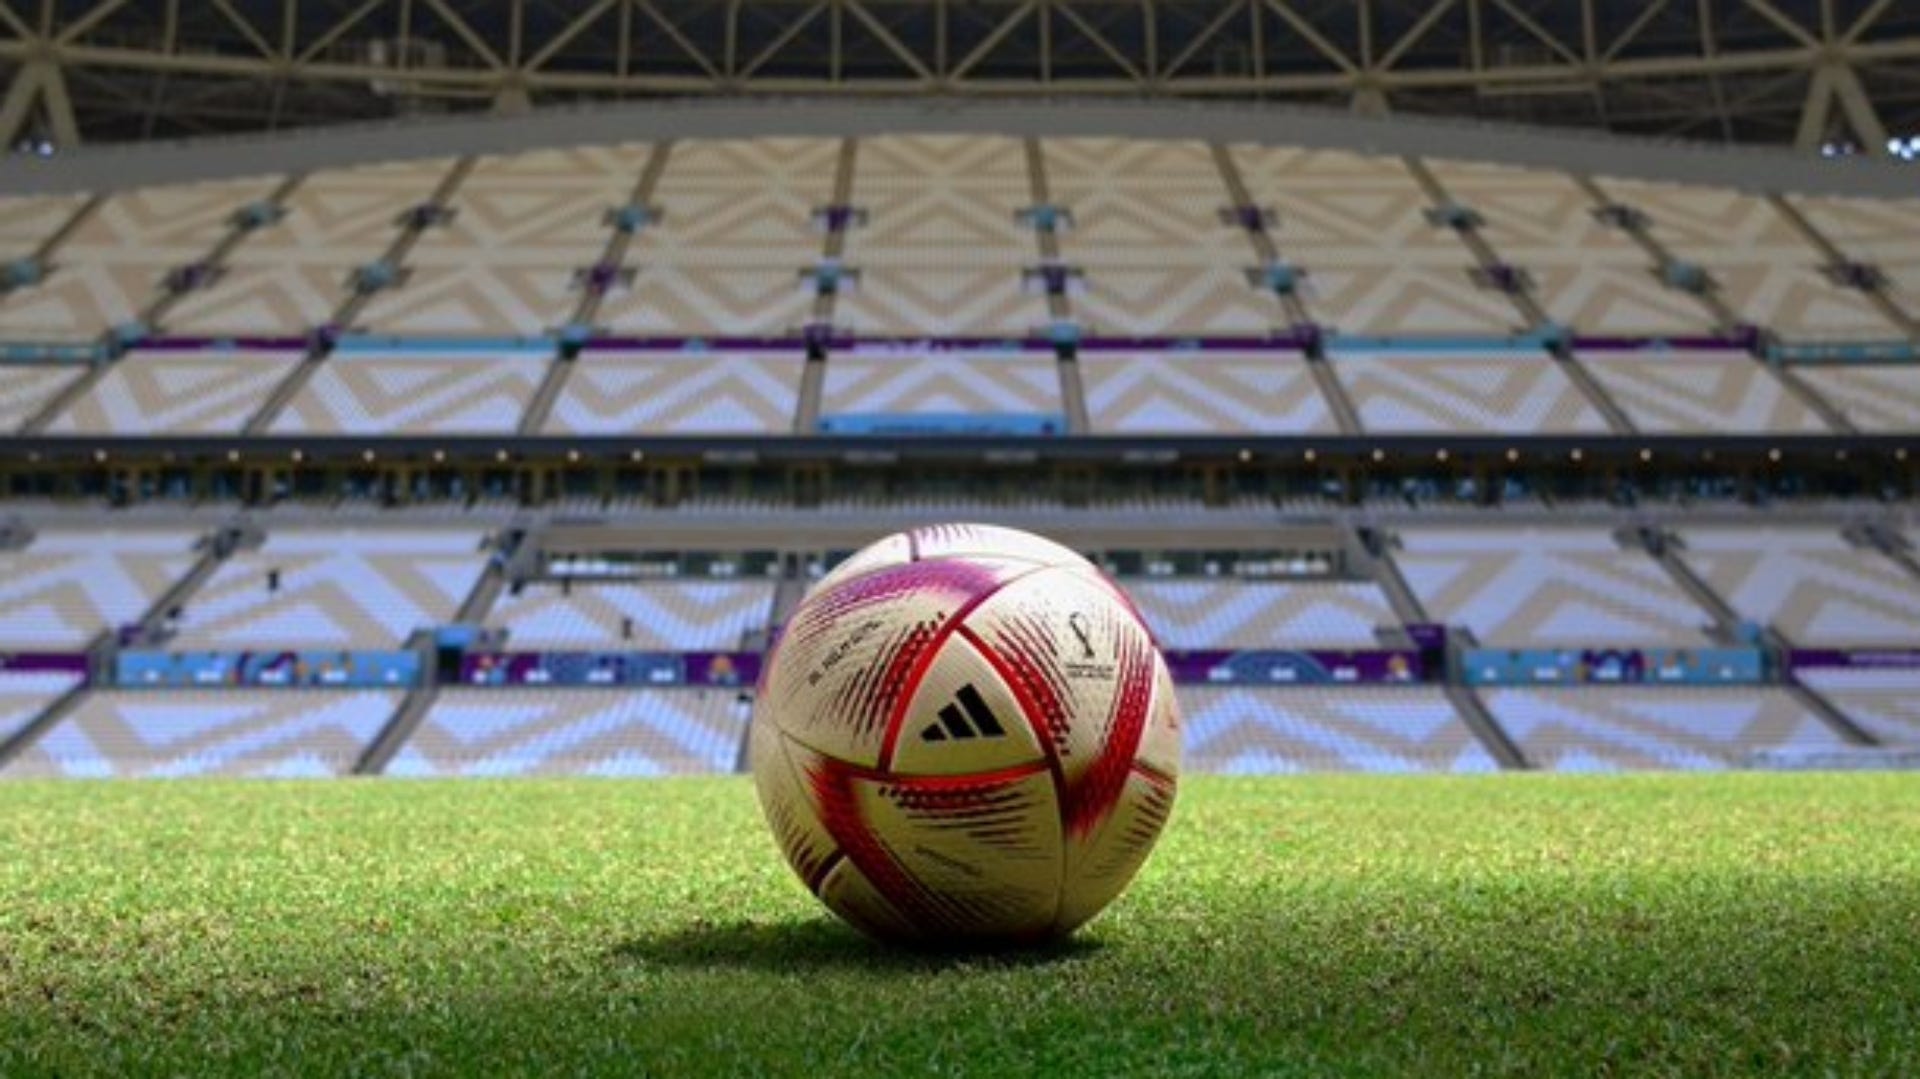 Fifa apresenta a Al Hilm, bola oficial dos últimos quatro jogos da